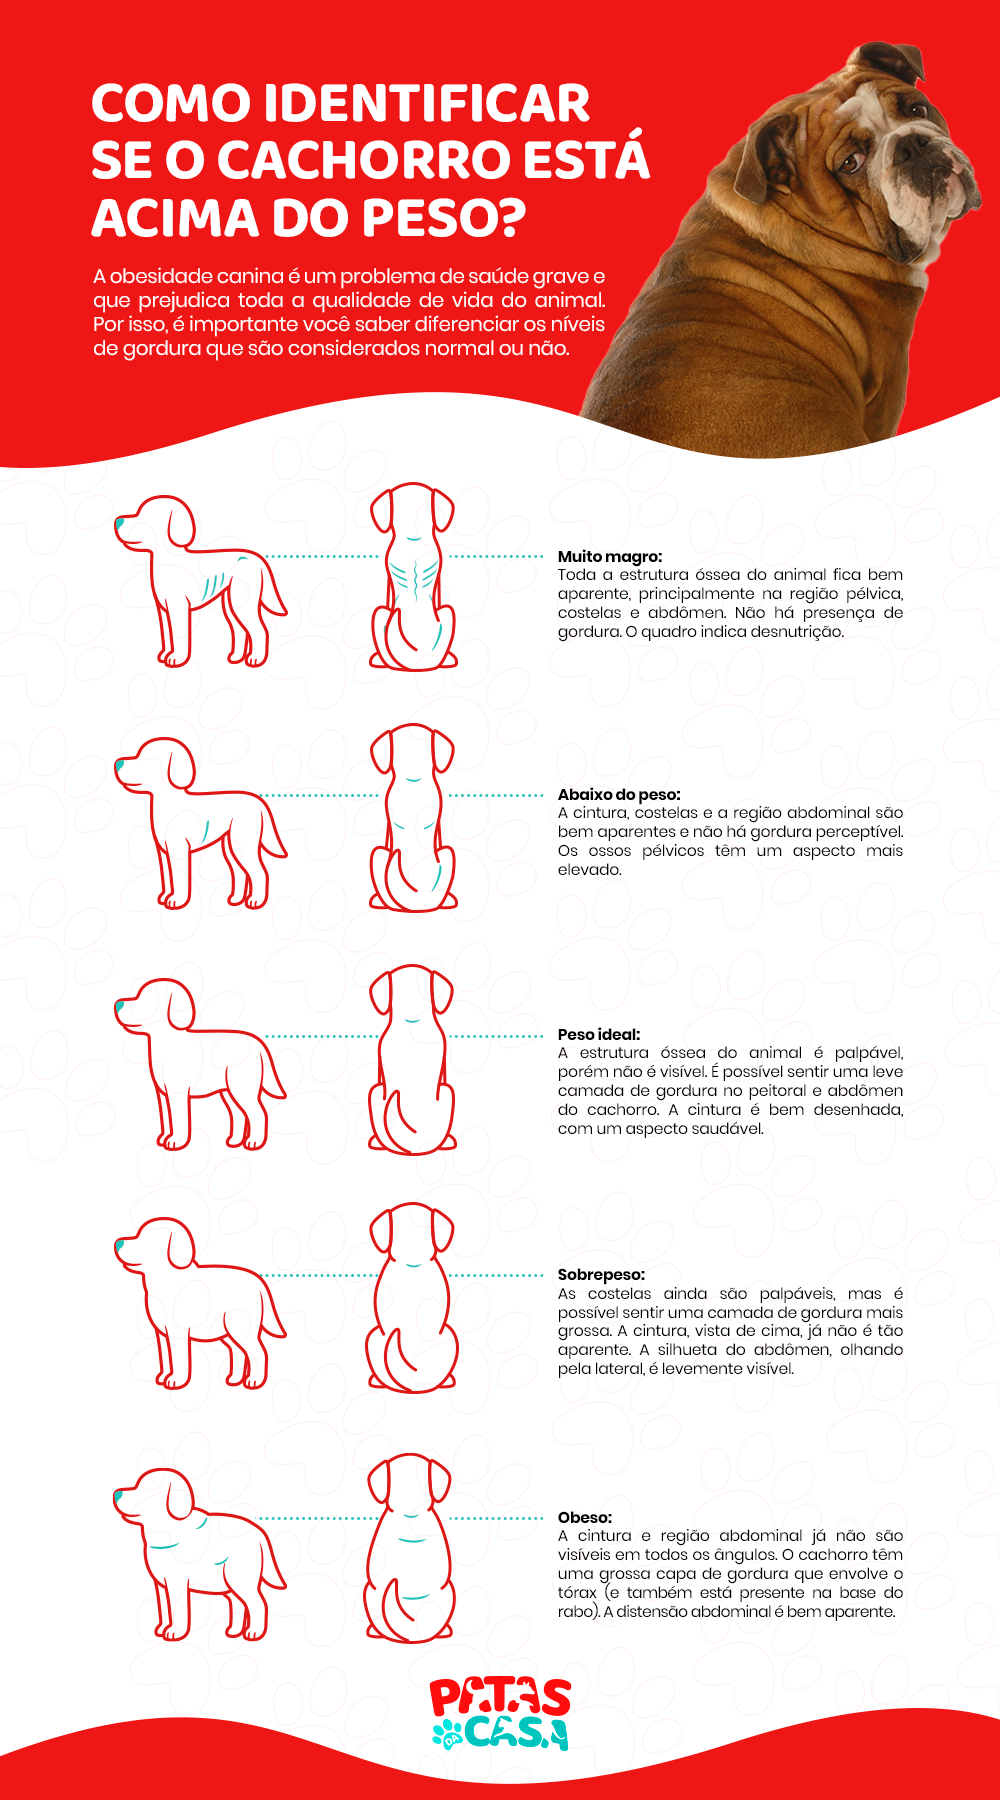  કેનાઇન ઓબેસિટી: ઇન્ફોગ્રાફિક તમને શીખવે છે કે મેદસ્વી કૂતરાને તંદુરસ્ત પ્રાણીથી કેવી રીતે અલગ પાડવો